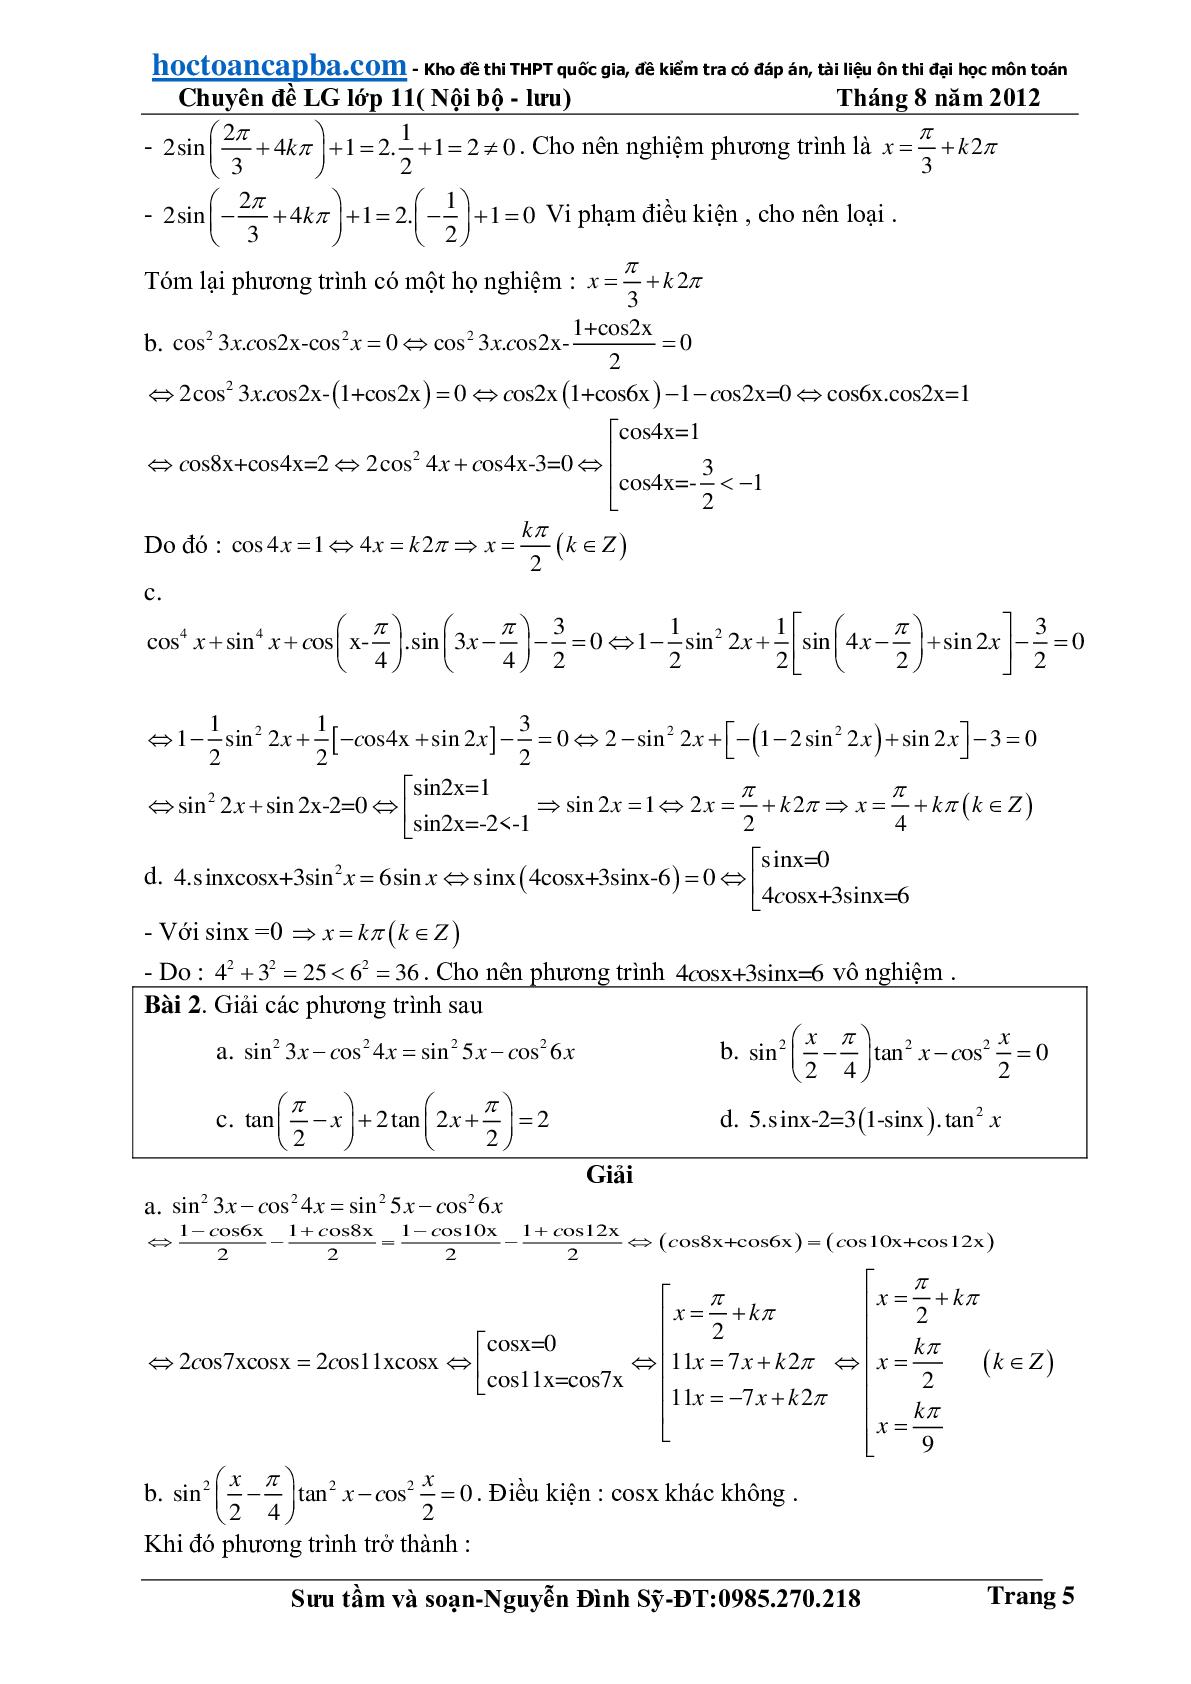 Hướng dẫn giải phương trình lượng giác cơ bản và đơn giản (trang 5)